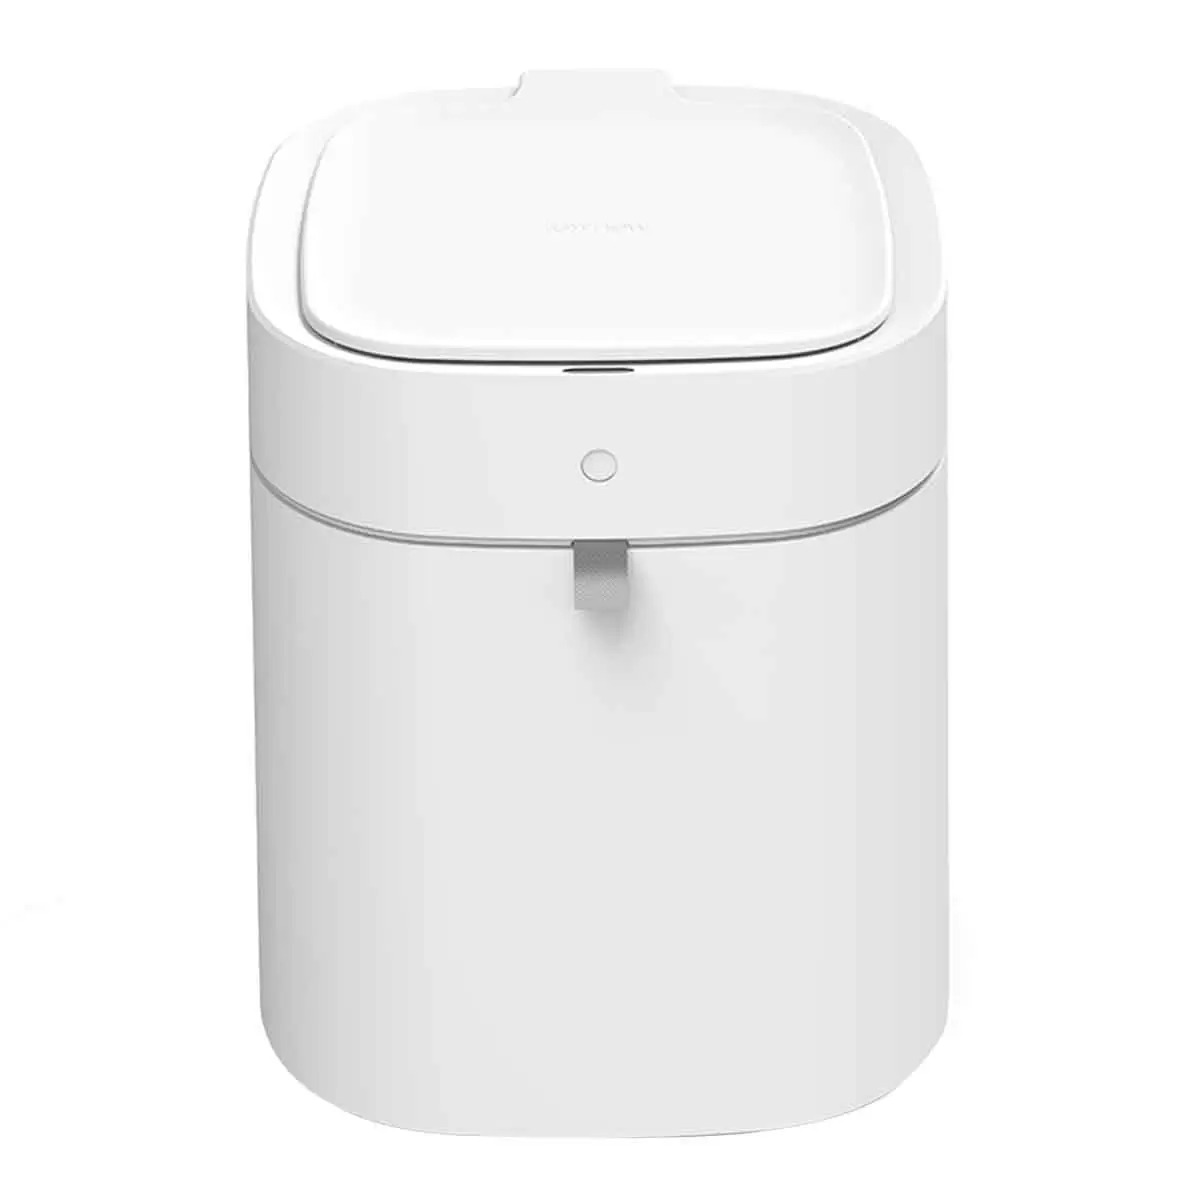 【折300+10%回饋】拓牛 T Air X 感應式智能垃圾桶 白色 13.5公升 + 白色垃圾袋 X 6入